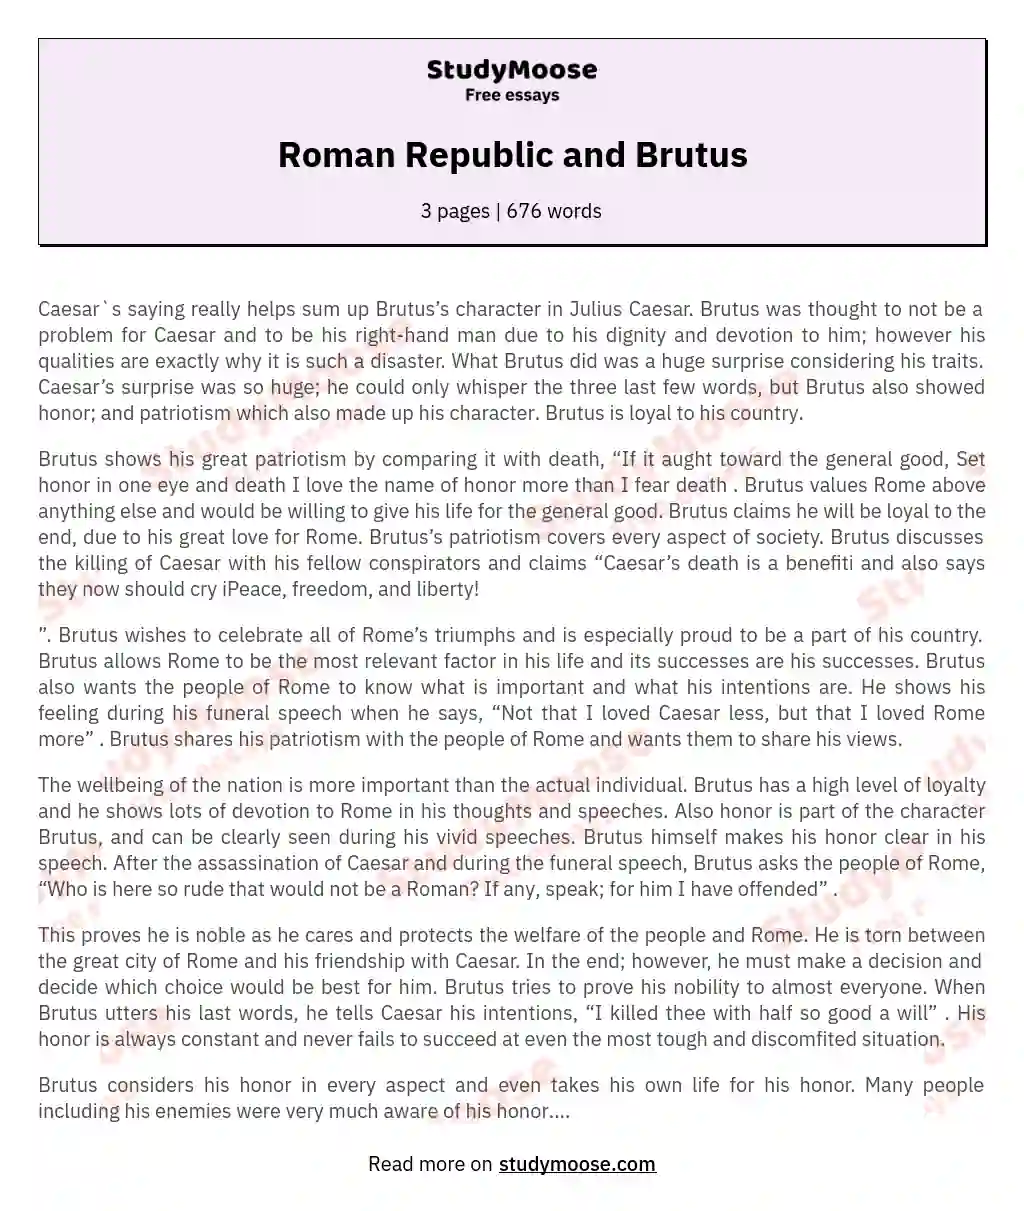 Roman Republic and Brutus essay